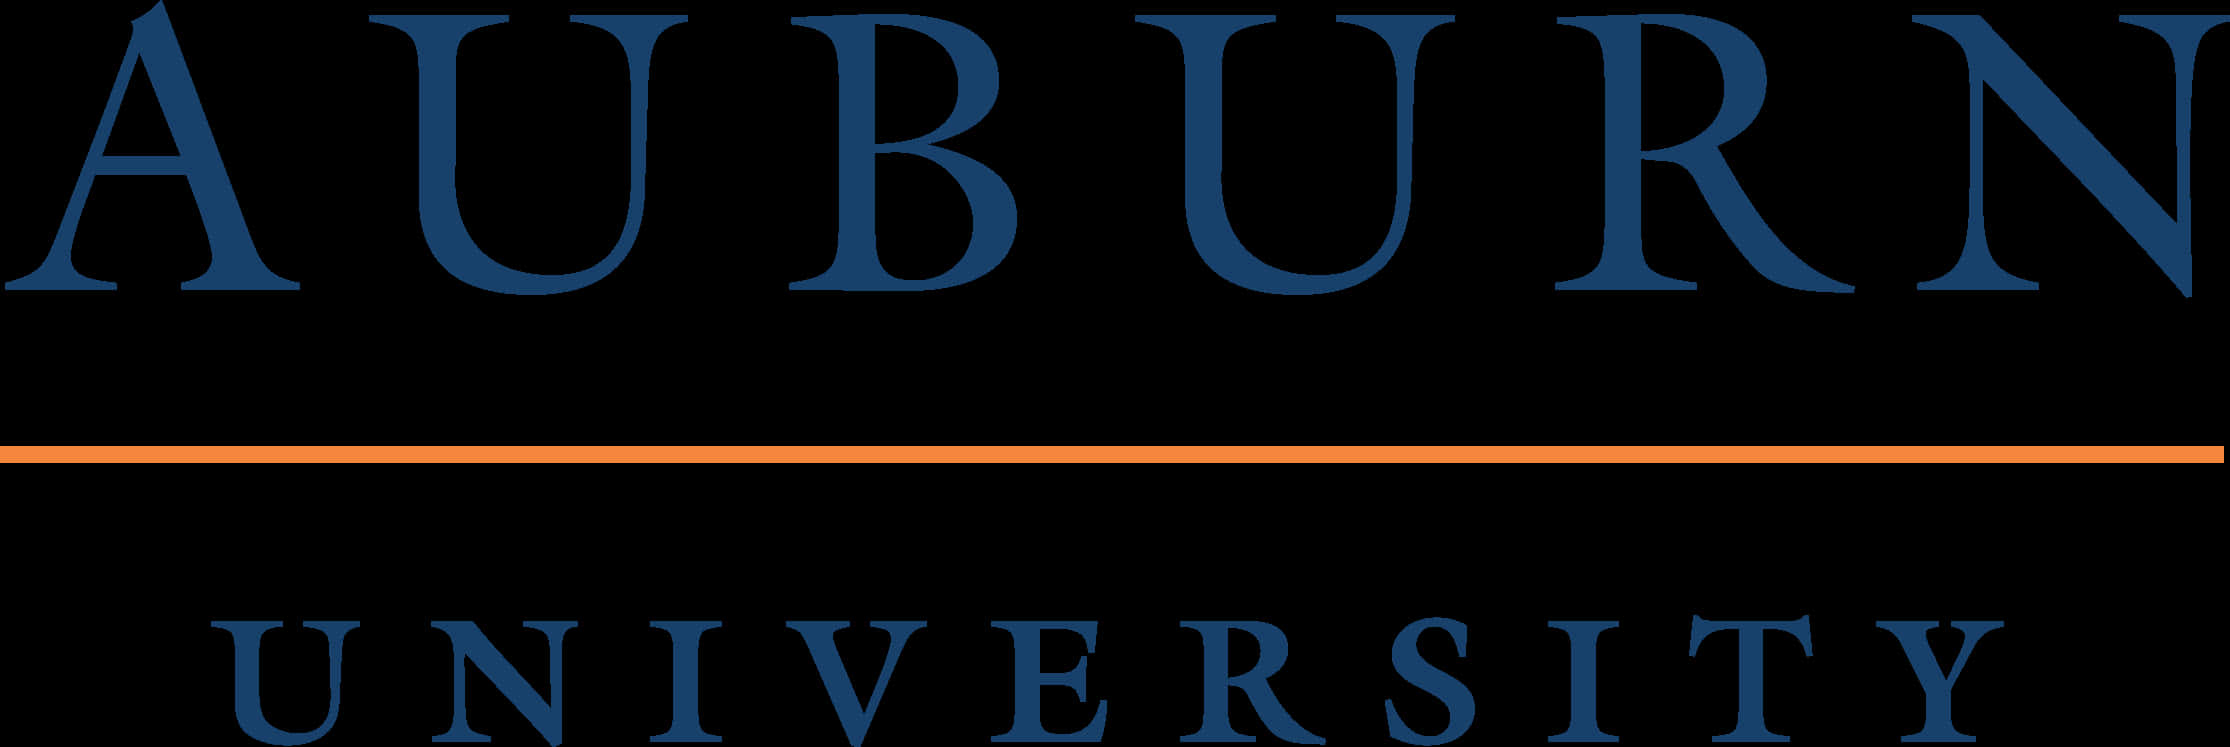 Simple Text Auburn Logo